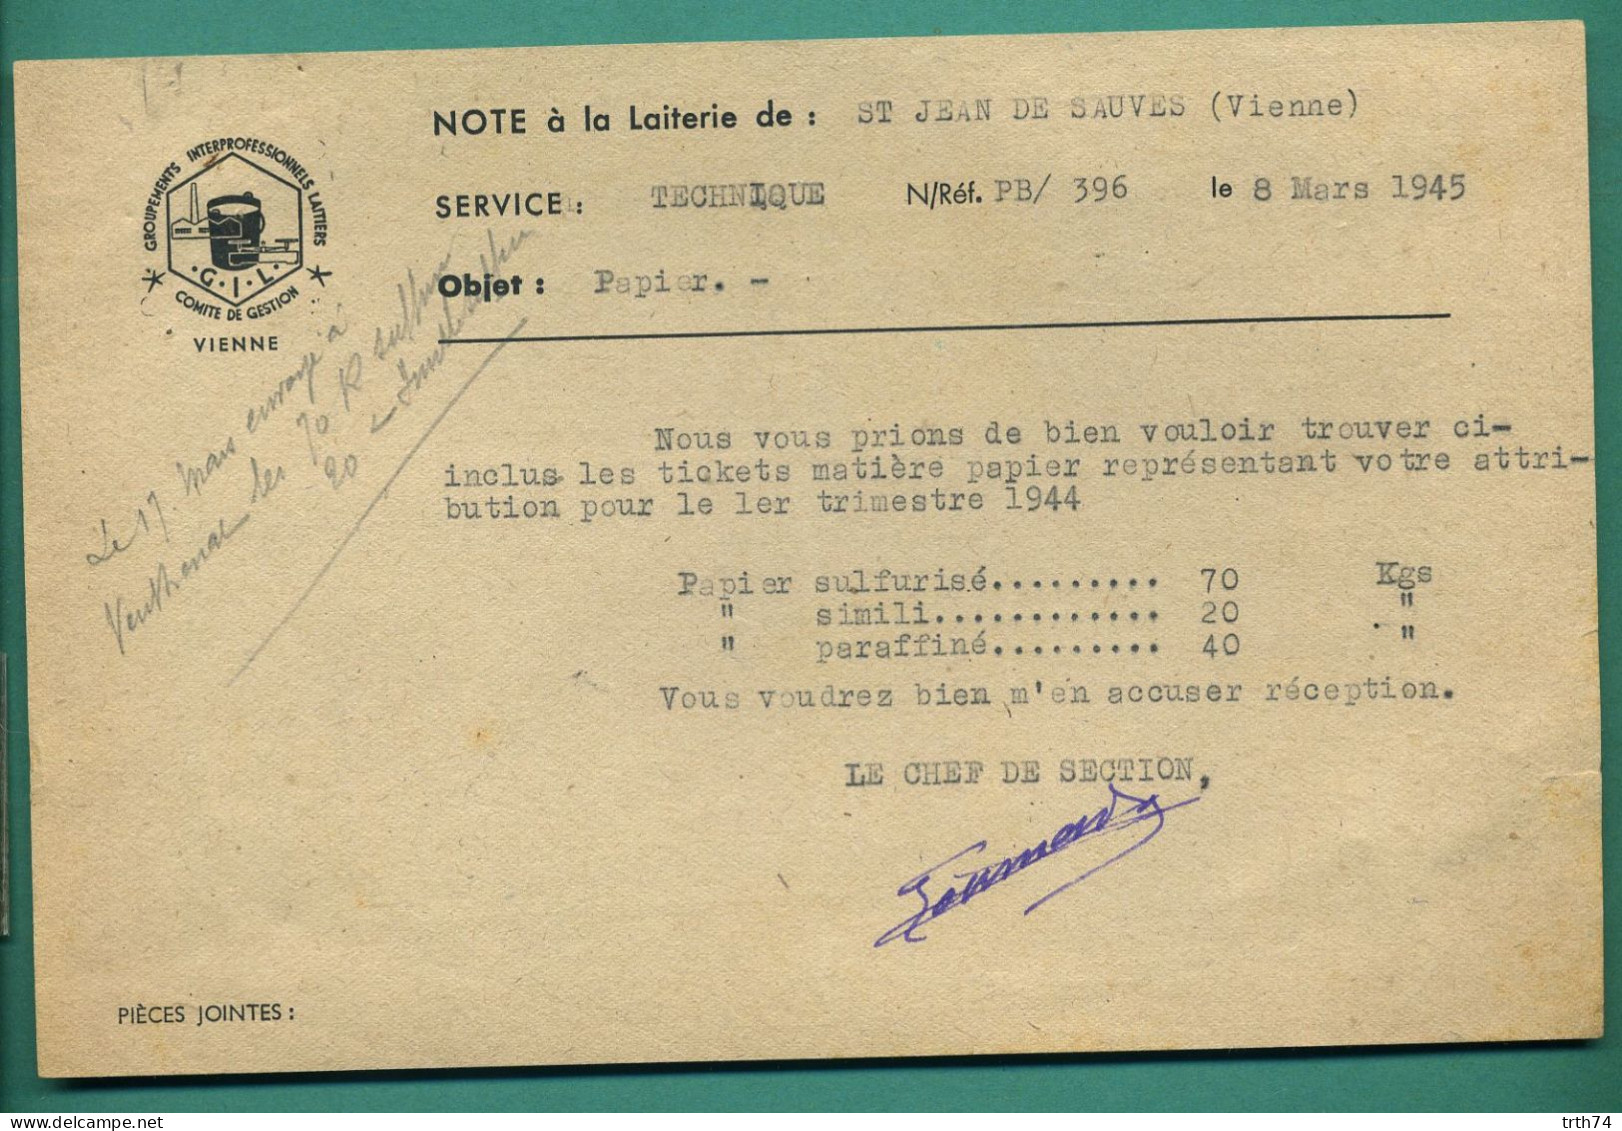 86 Saint Jean De Sauves Groupements Interprofessionnels Laitiers Note à La Laiterie 8 Mars 1945 - Alimentaire